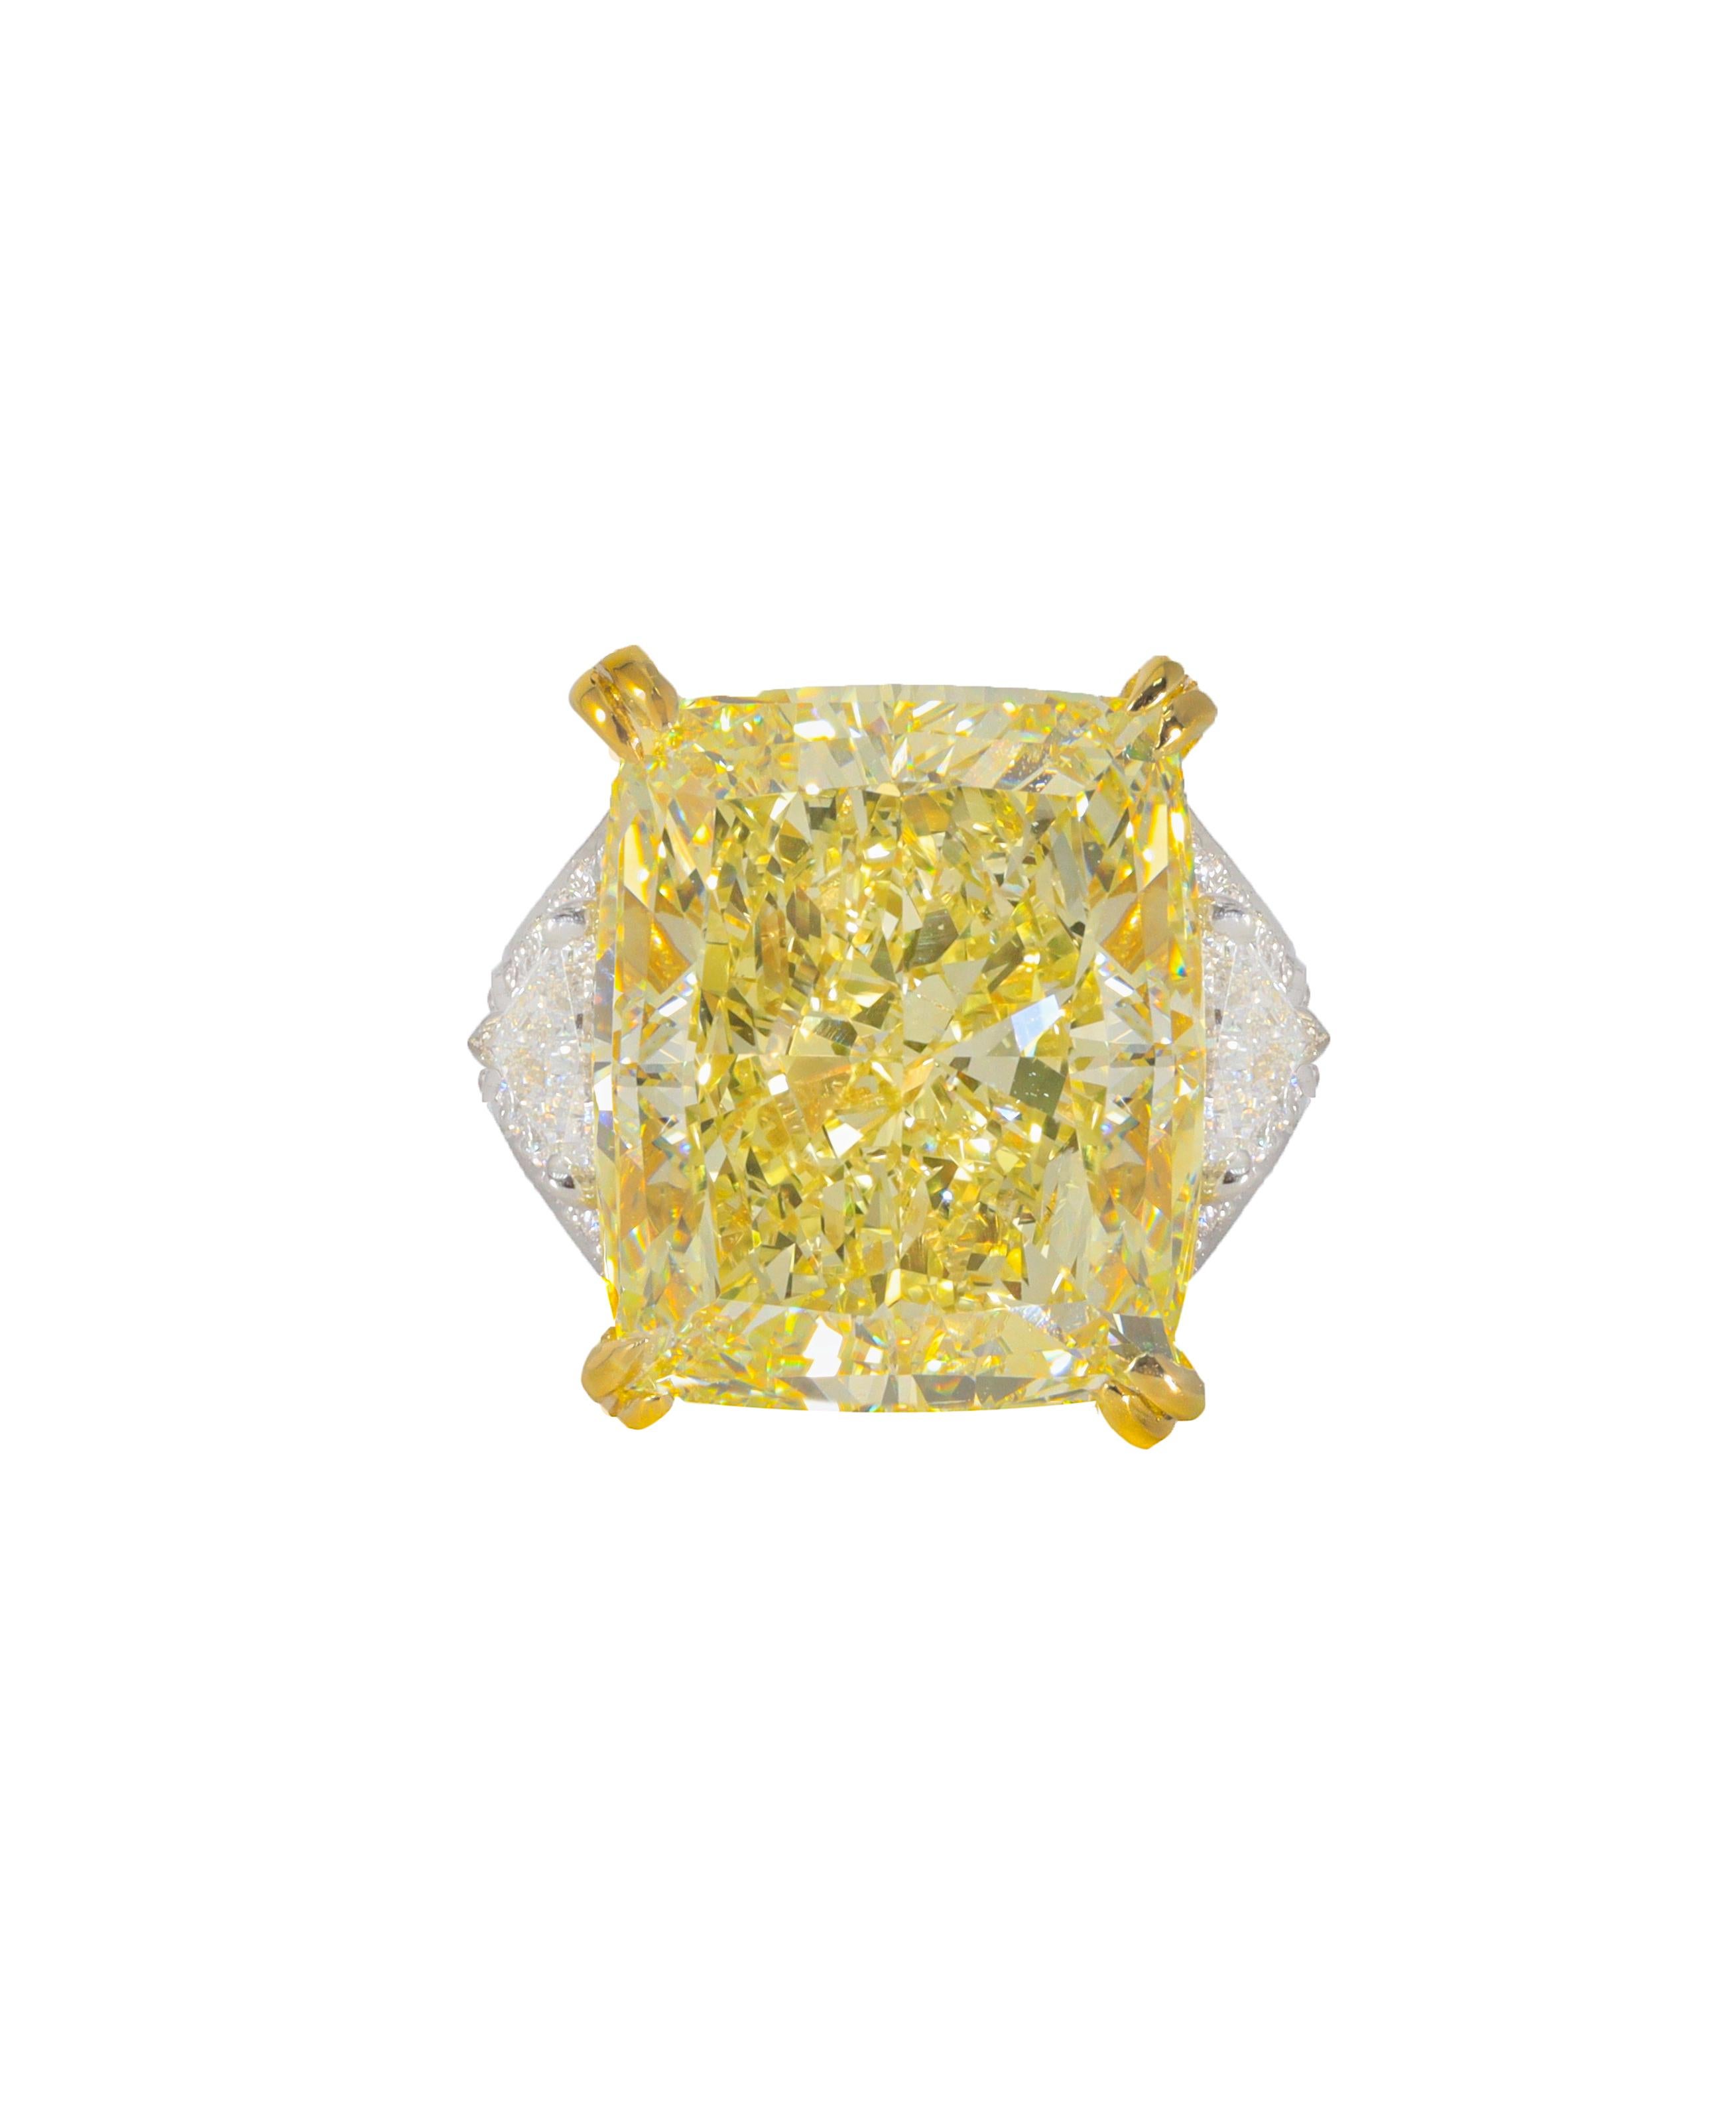 Asscher Cut Platinum and 18kt Yellow Gold Ring with Fancy Intense Yellow Center Diamond